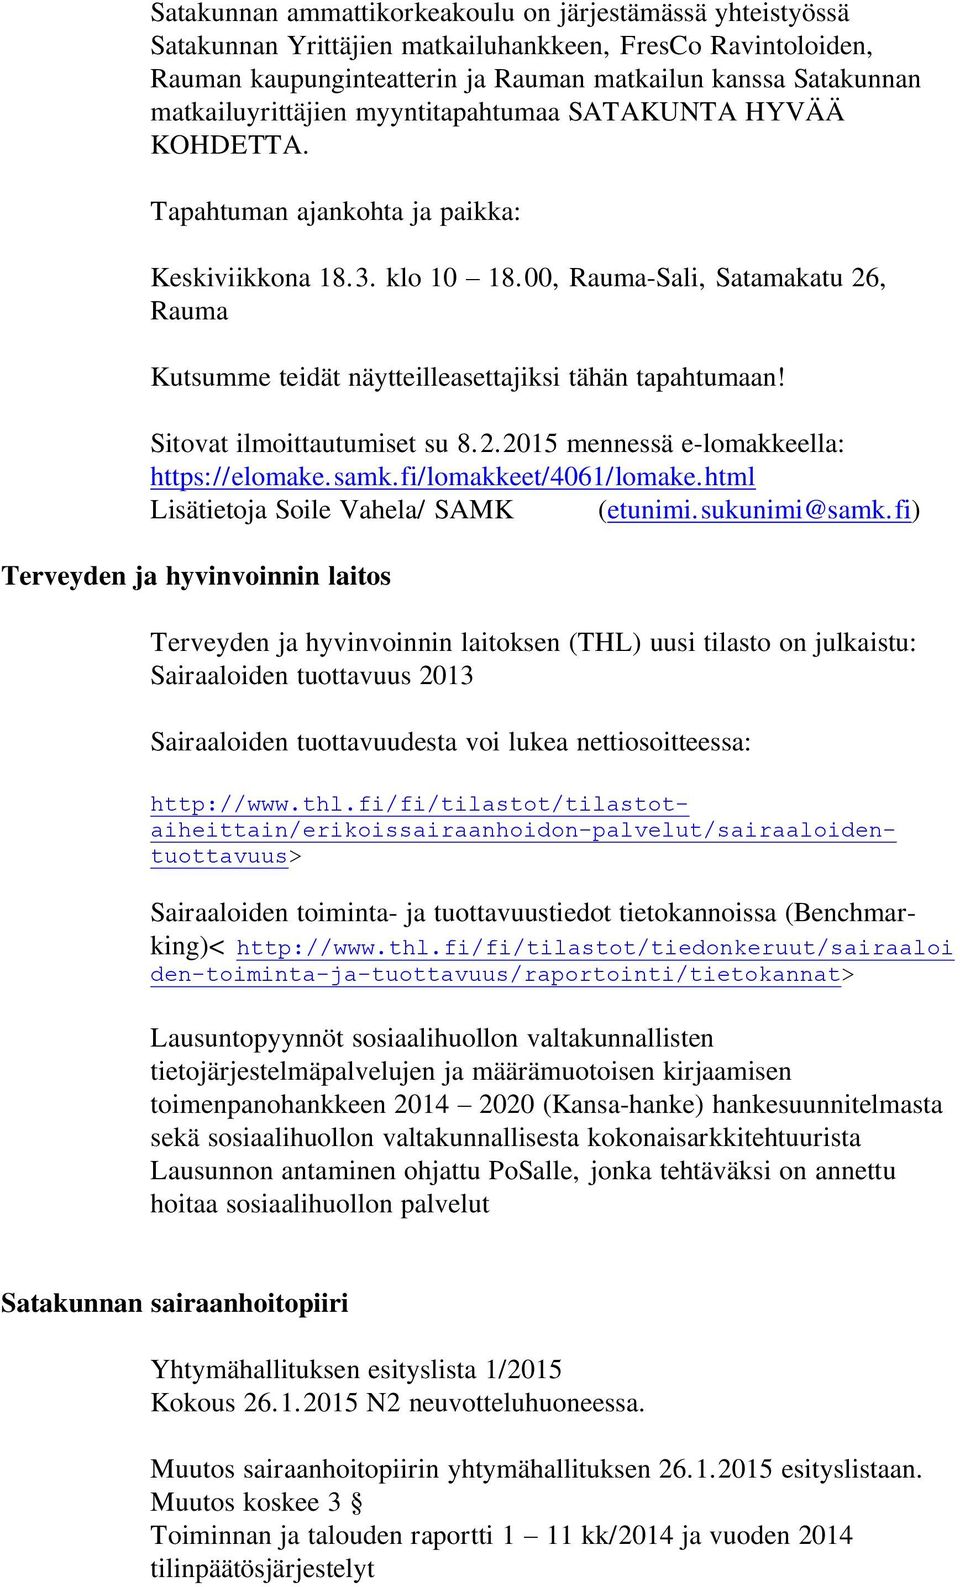 00, Rauma-Sali, Satamakatu 26, Rauma Kutsumme teidät näytteilleasettajiksi tähän tapahtumaan! Sitovat ilmoittautumiset su 8.2.2015 mennessä e-lomakkeella: https://elomake.samk.